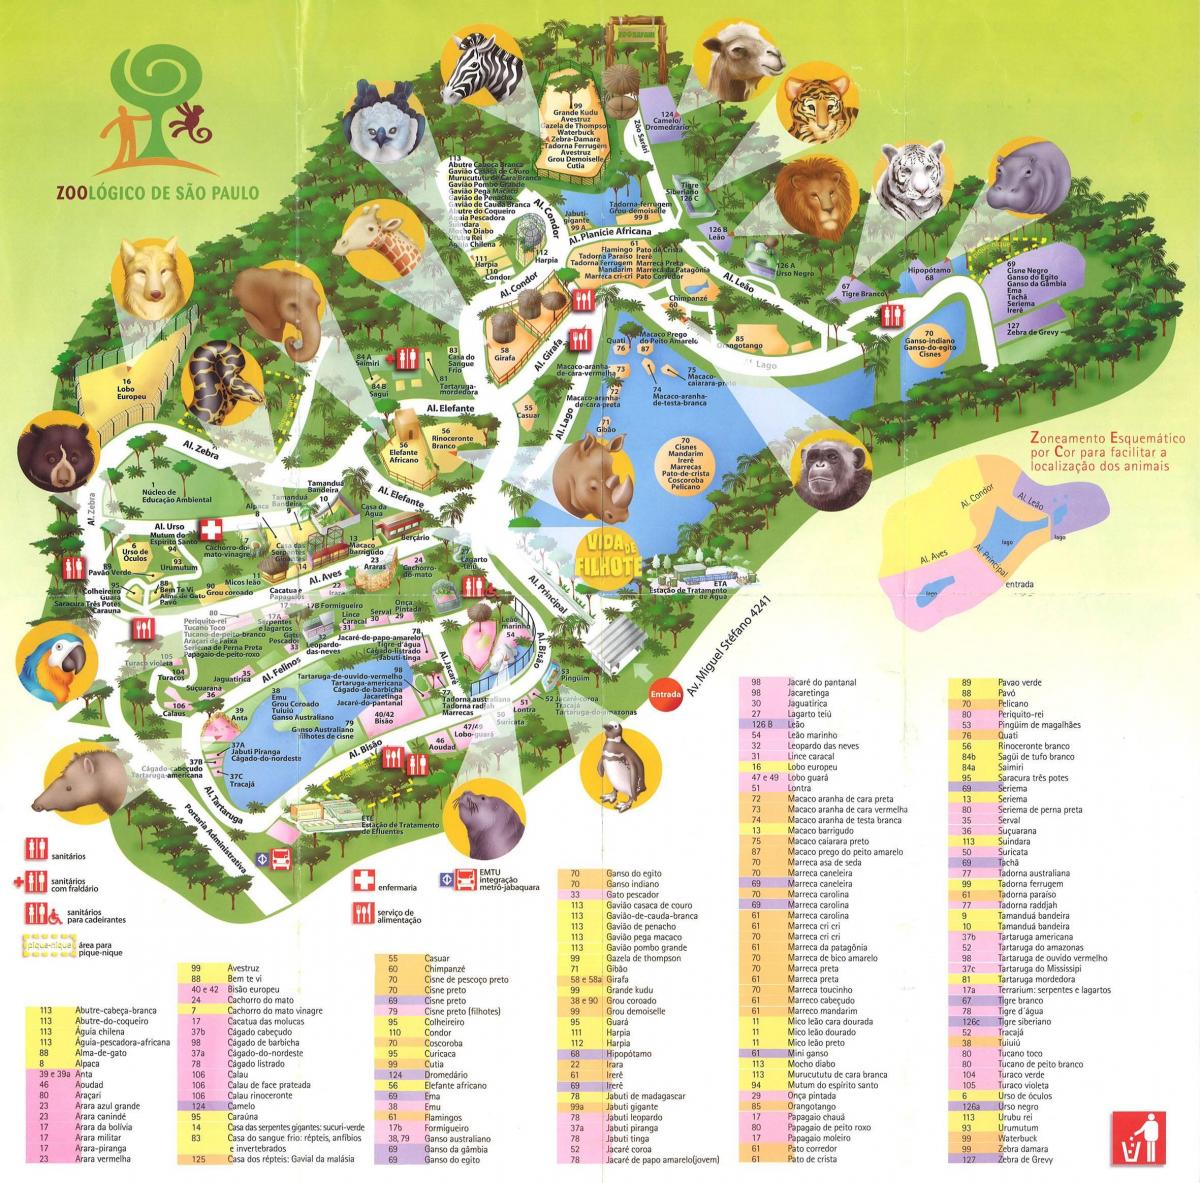 नक्शे के जूलॉजिकल पार्क के साओ पाउलो